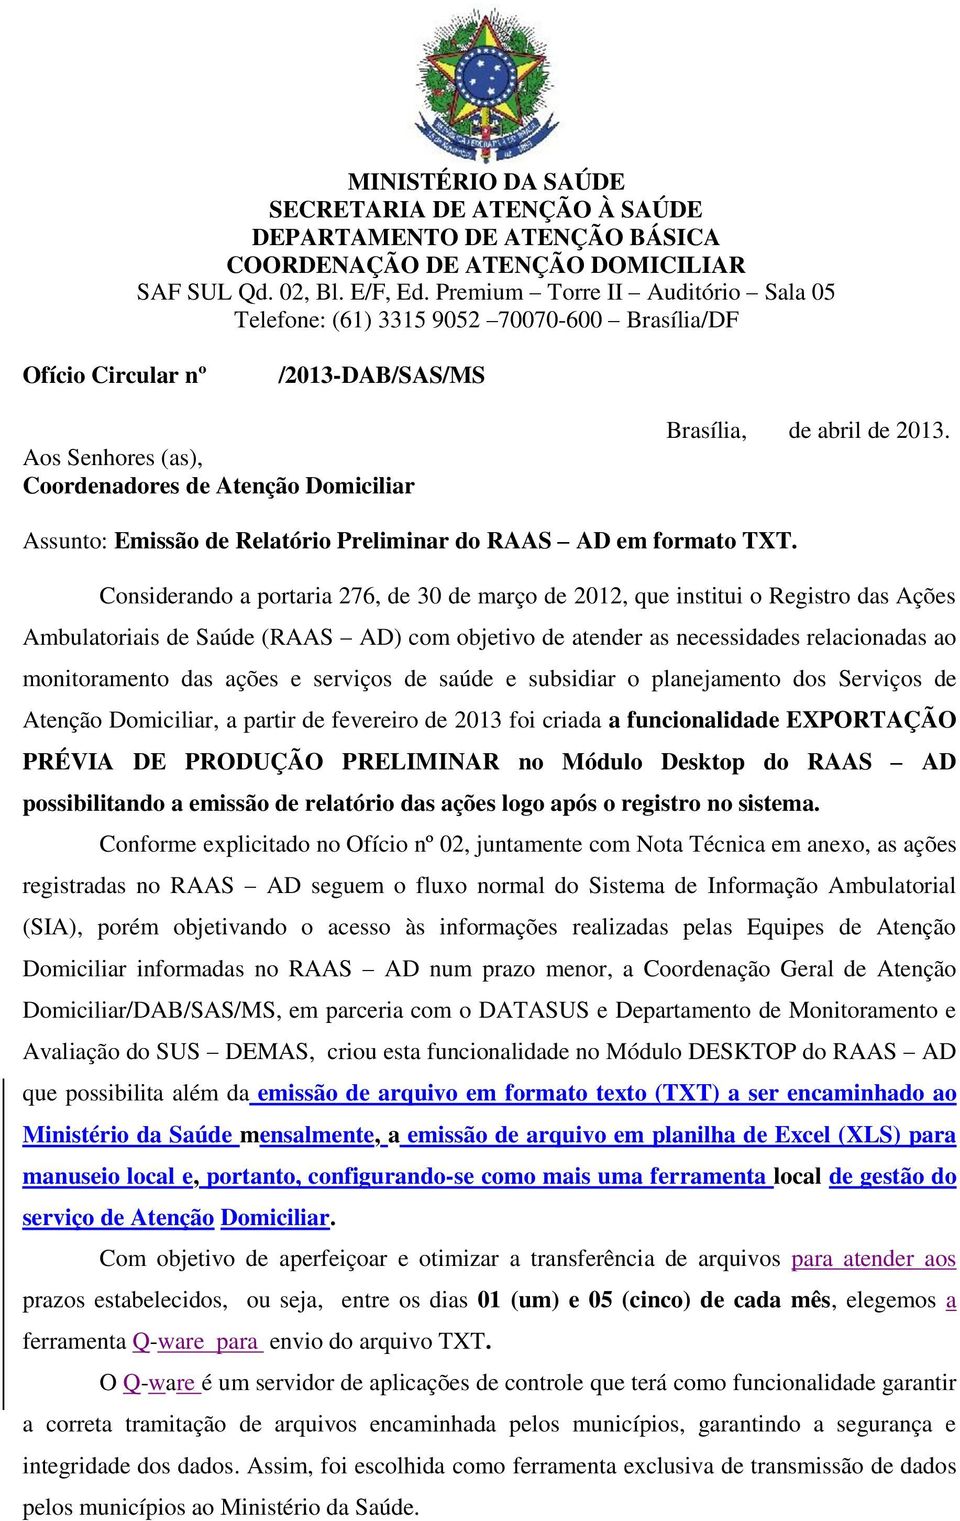 Assunto: Emissão de Relatório Preliminar do RAAS AD em formato TXT.